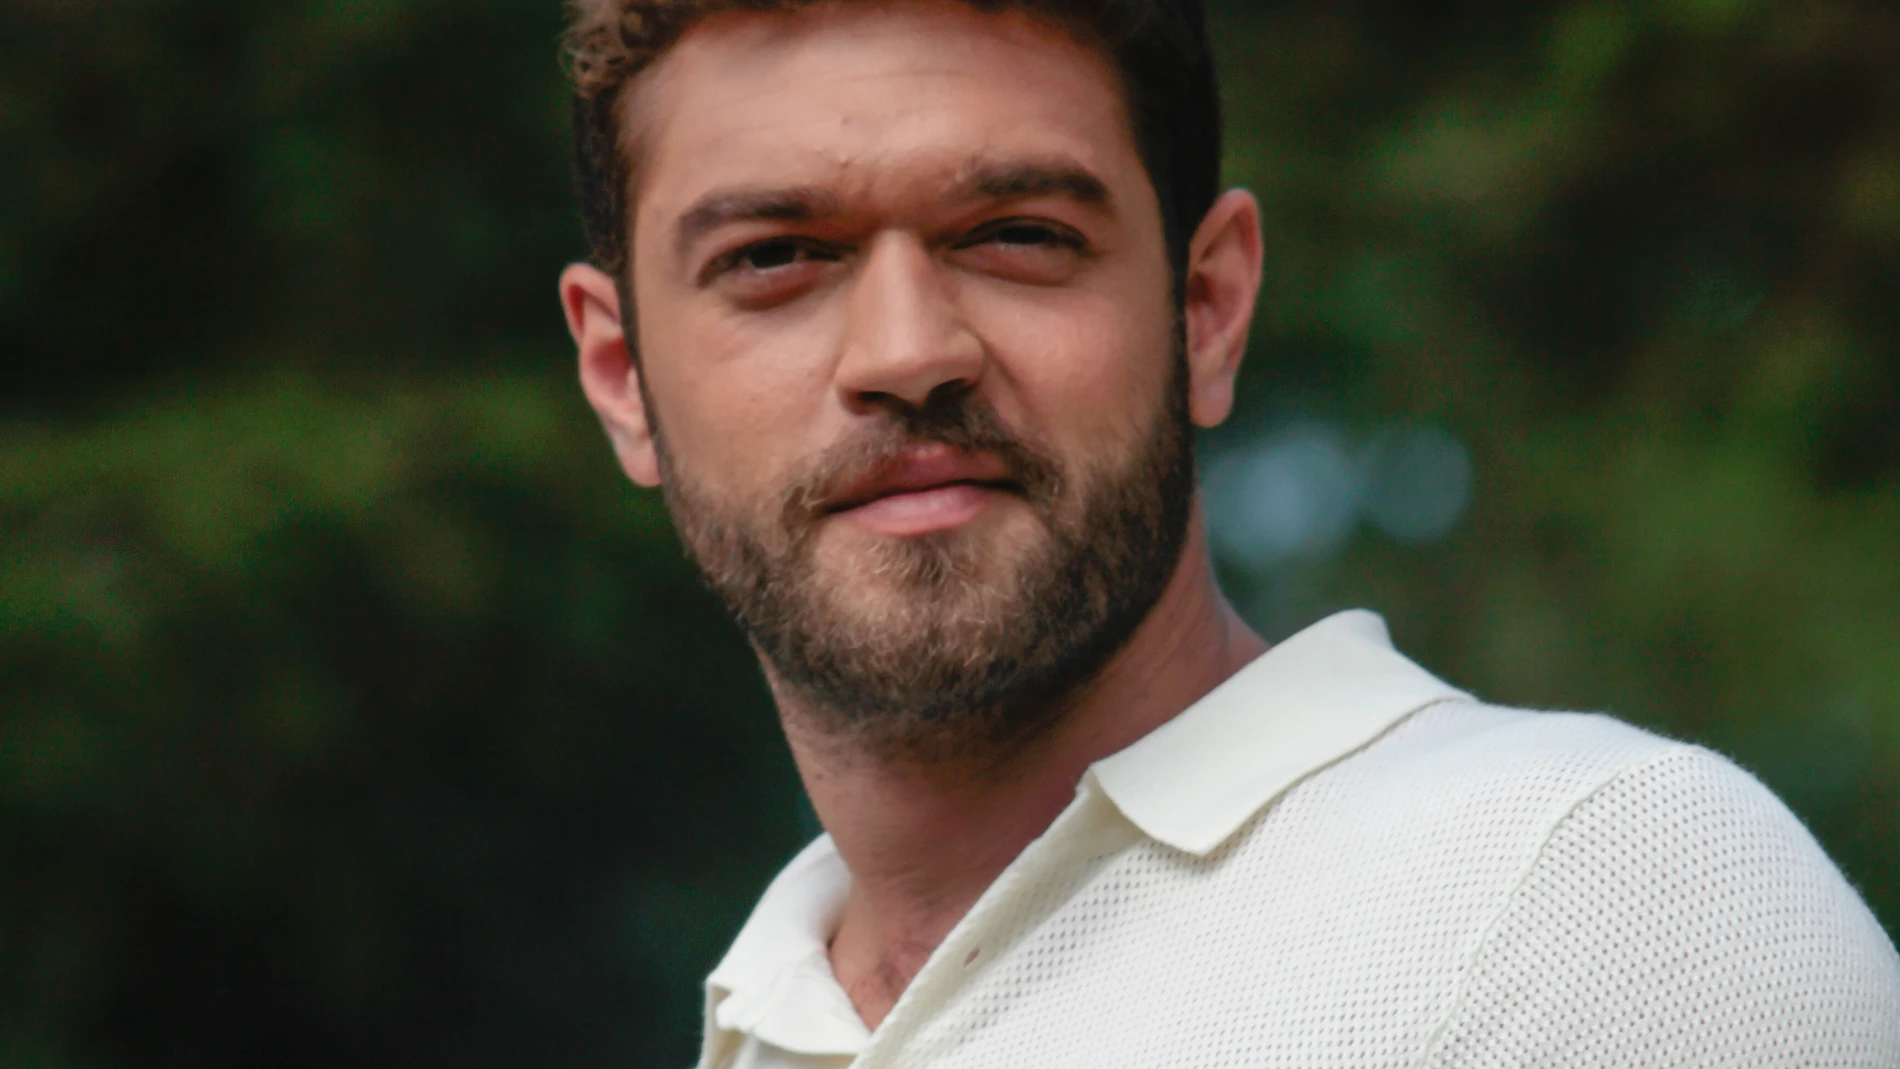 Furkan Andiç es Savas Sargun, un joven de la alta sociedad de Estambul